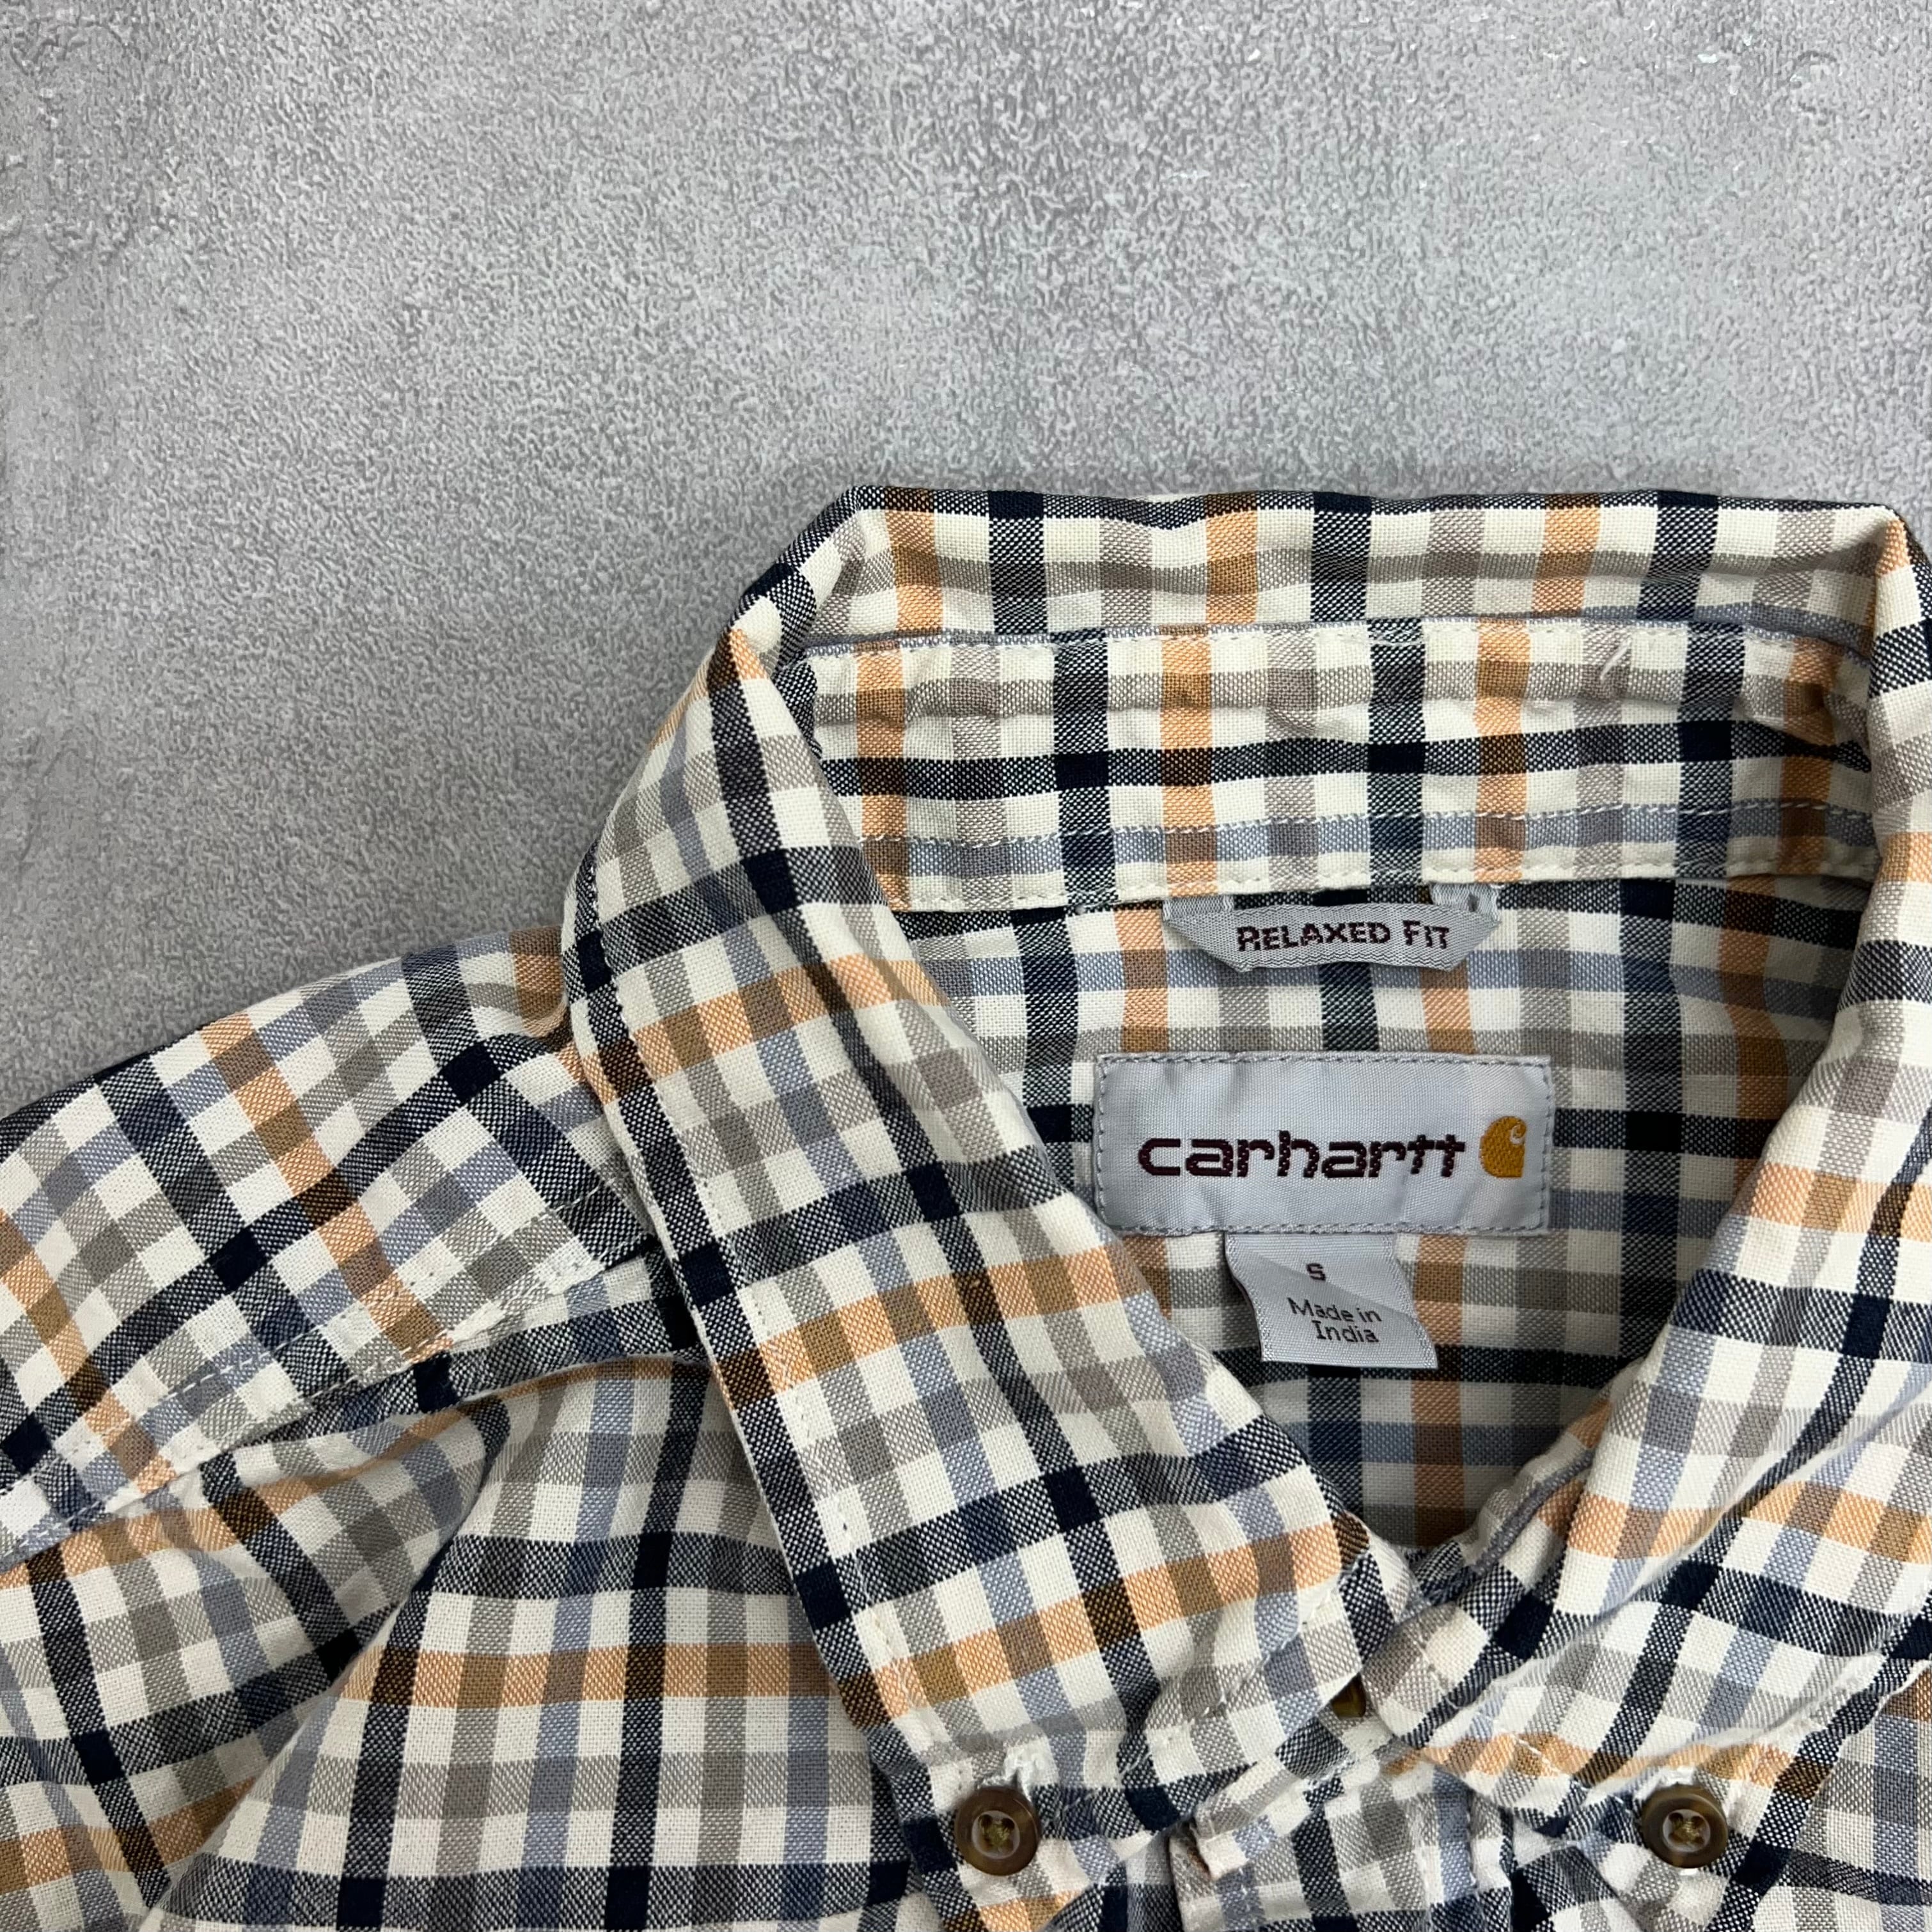 916 Carhartt/カーハート Check Shirts/チェックシャツ サイズS